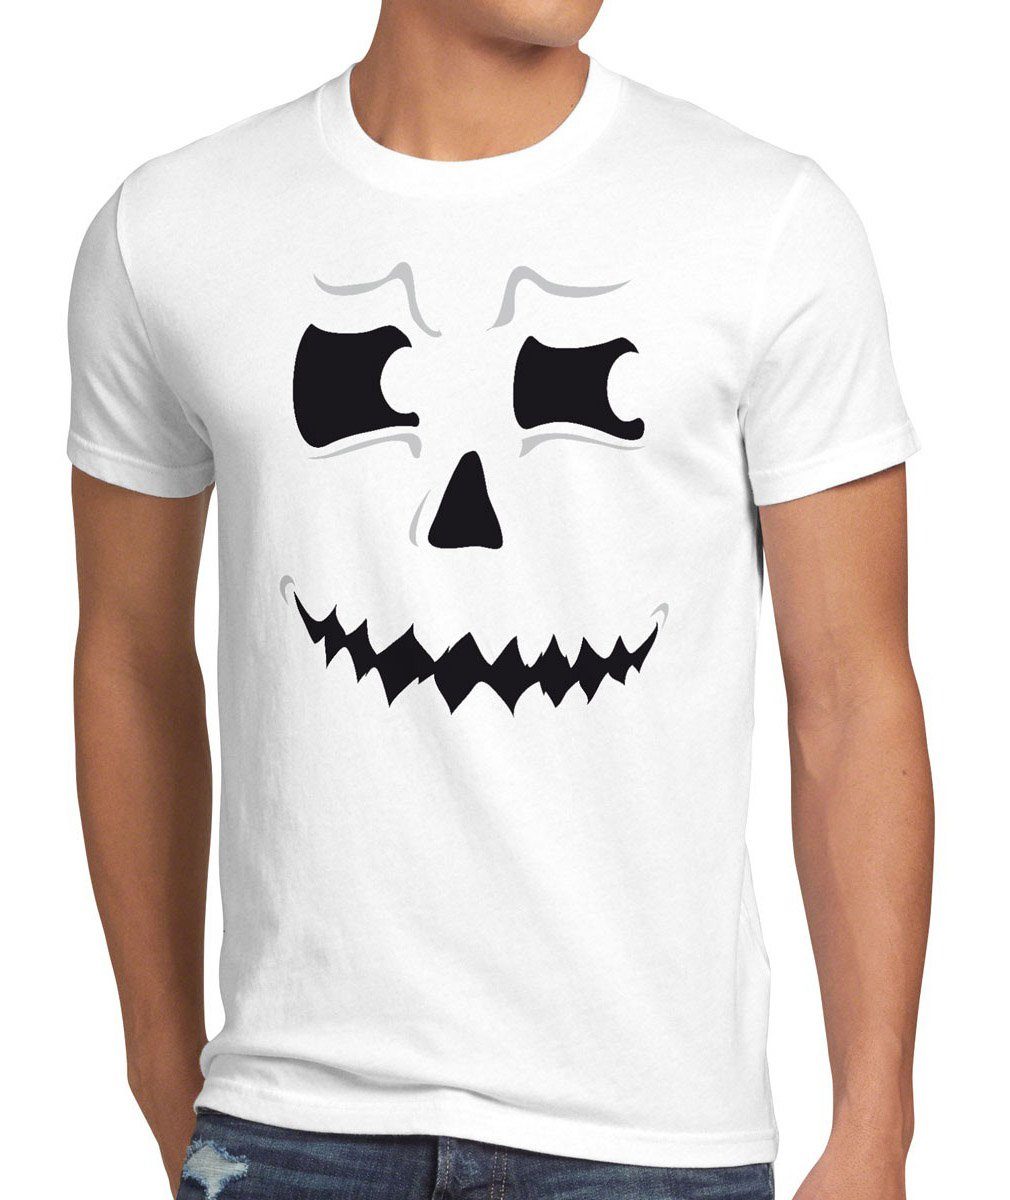 T-Shirt Geist Kostüm style3 Spuk Print-Shirt Halloween Party Herren weiß Fun Fasching Kürbis-Kopf Grusel